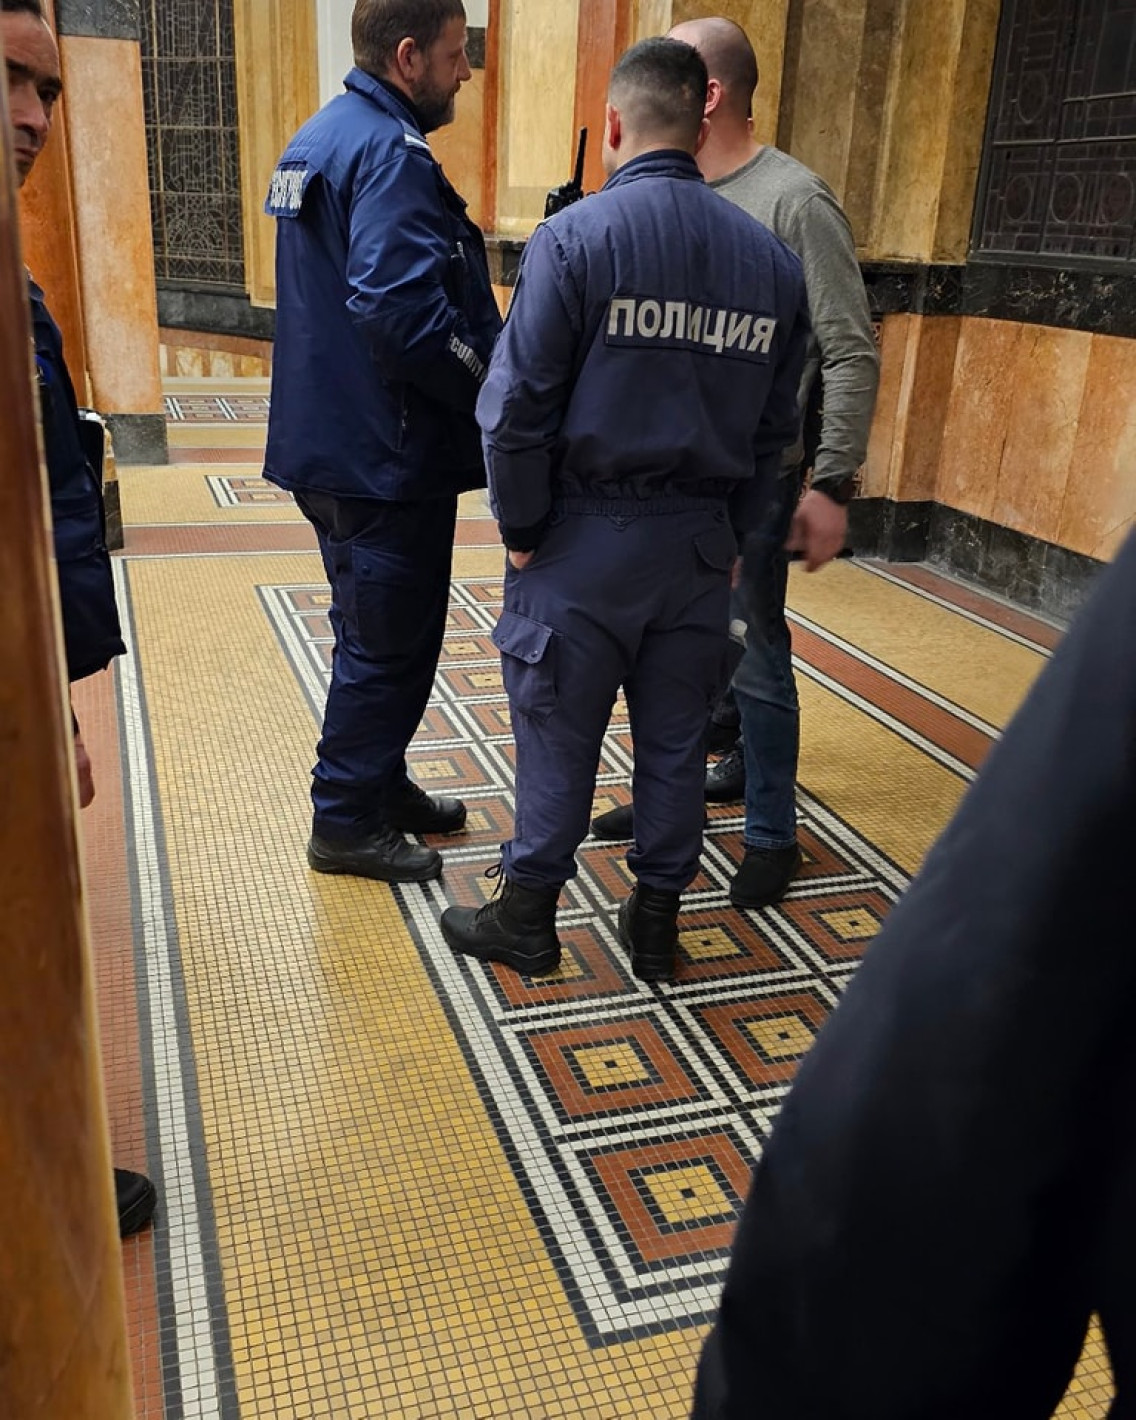 Васил Терзиев влезе с въоръжена охрана в Софийския университет, полицията изгони гардовете му